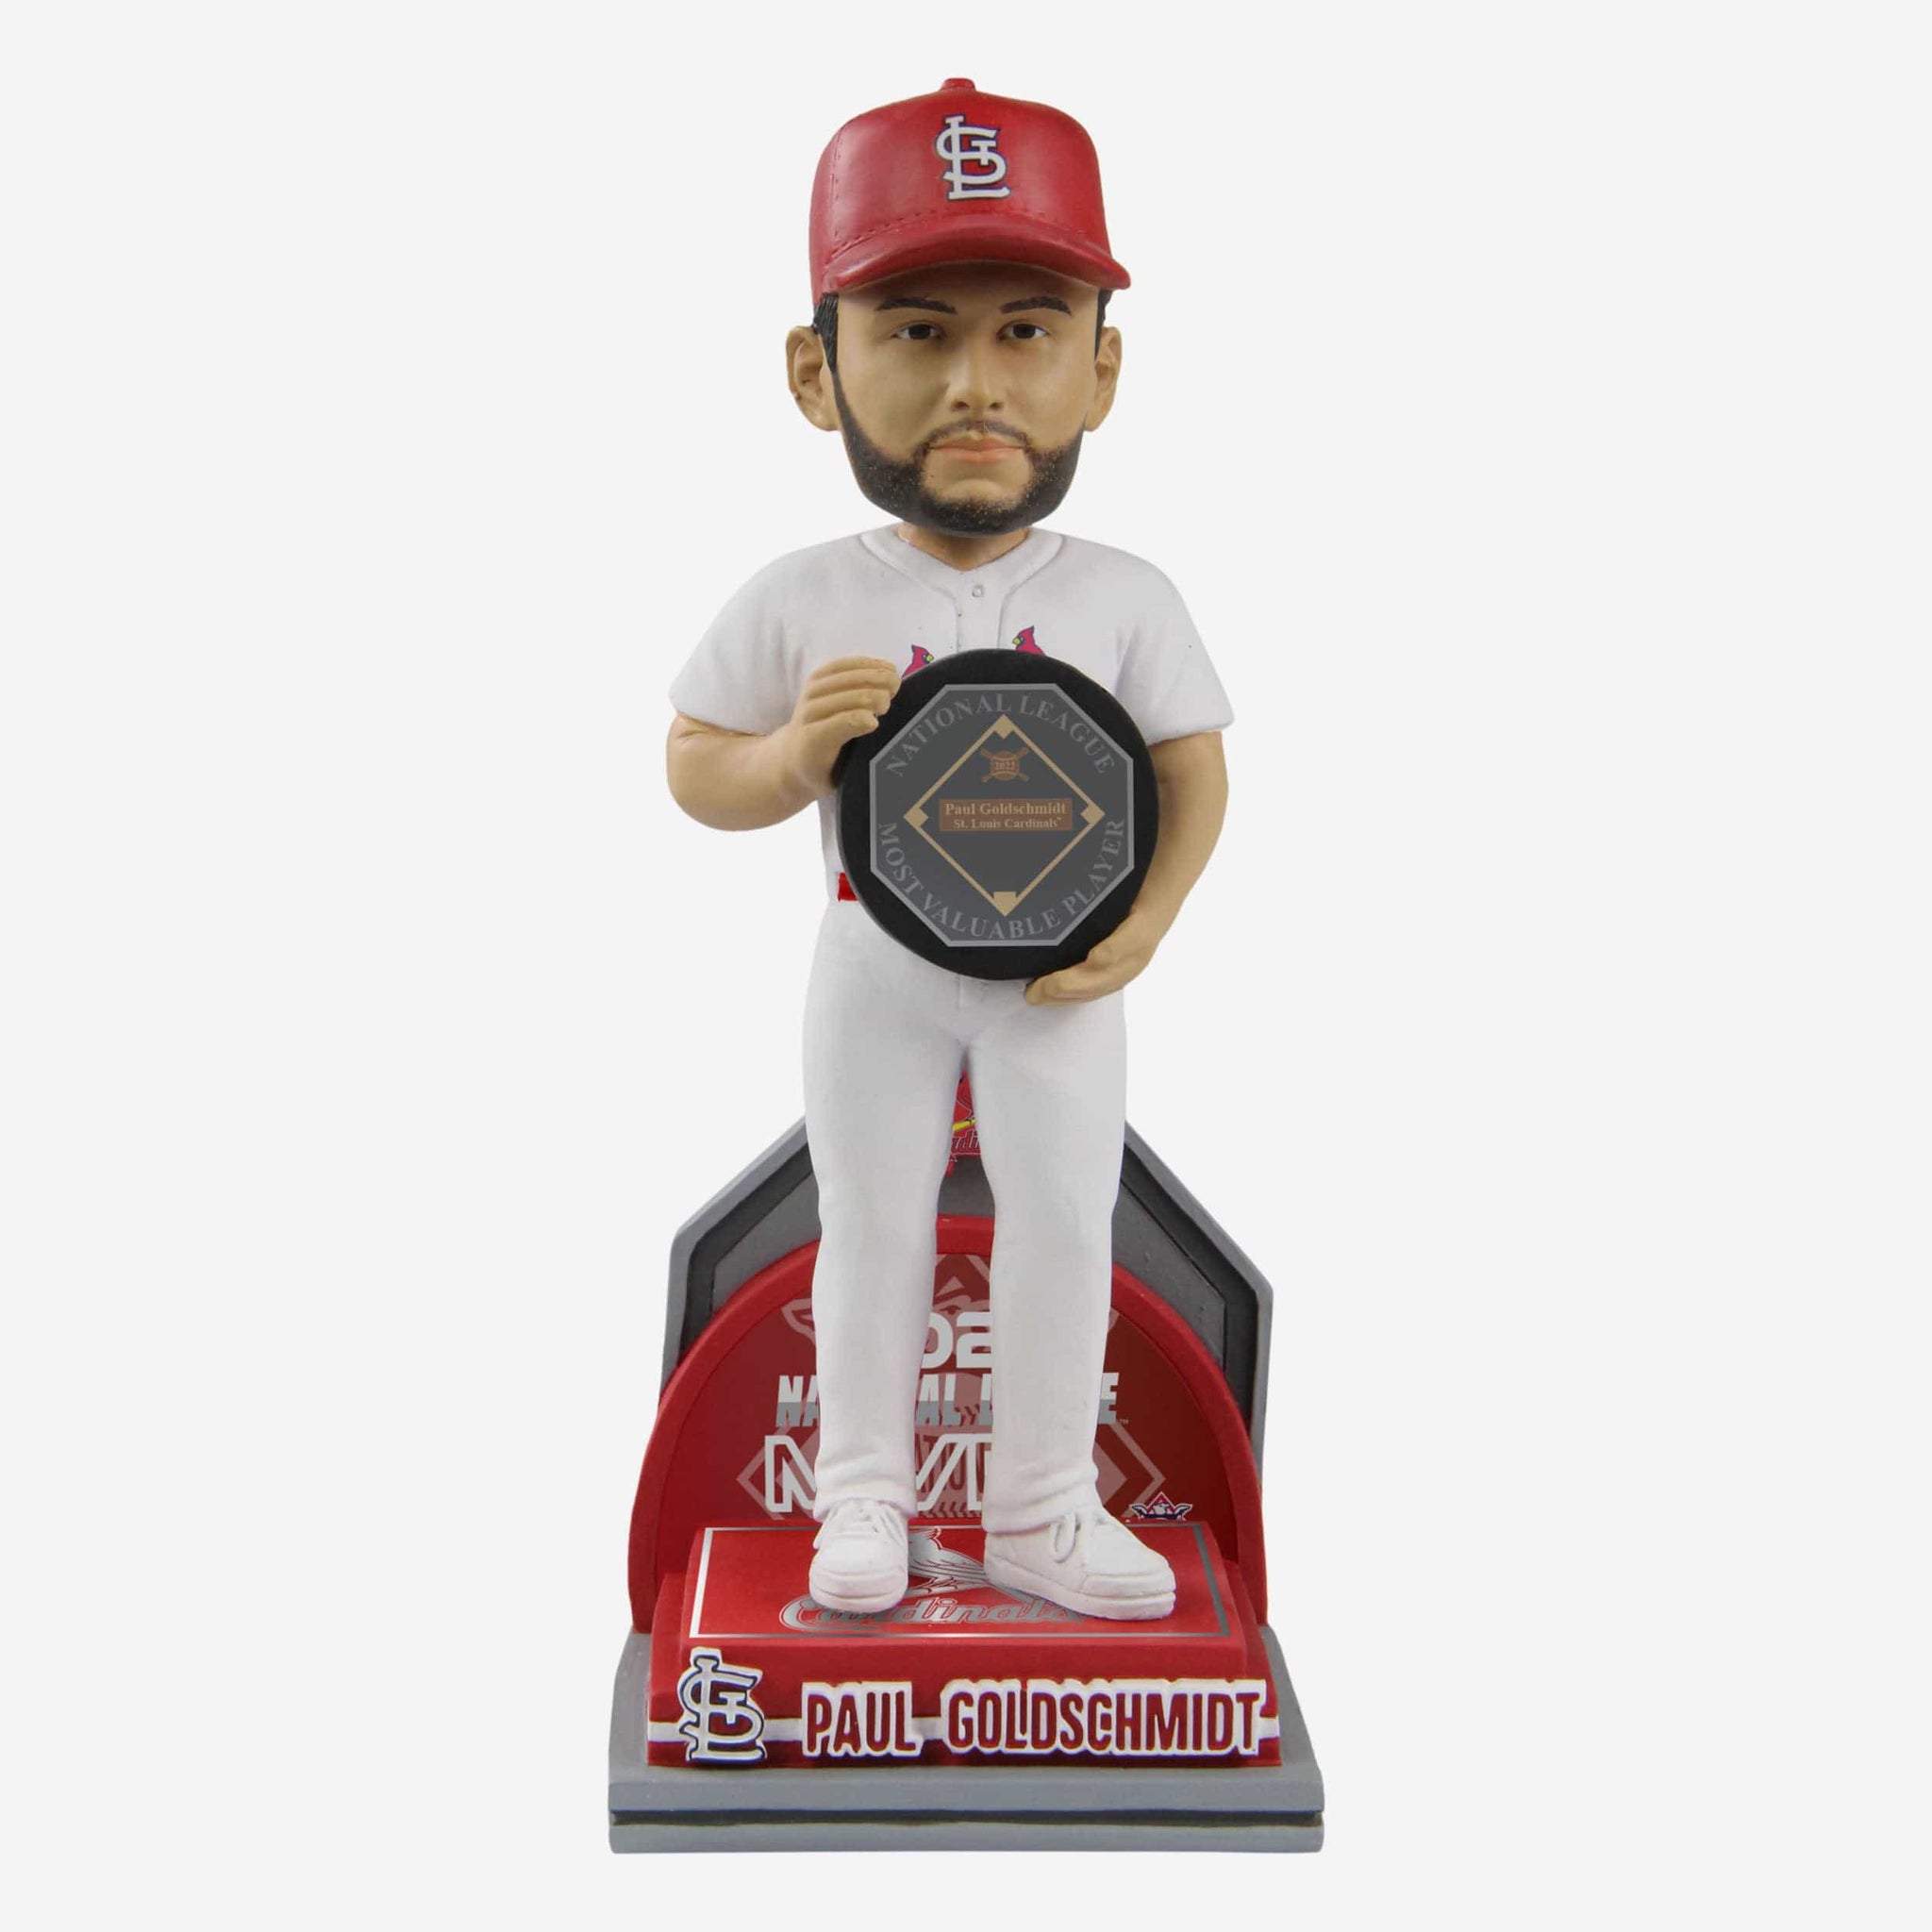 St. Louis Cardinals fans need this Paul Goldschmidt bobblehead